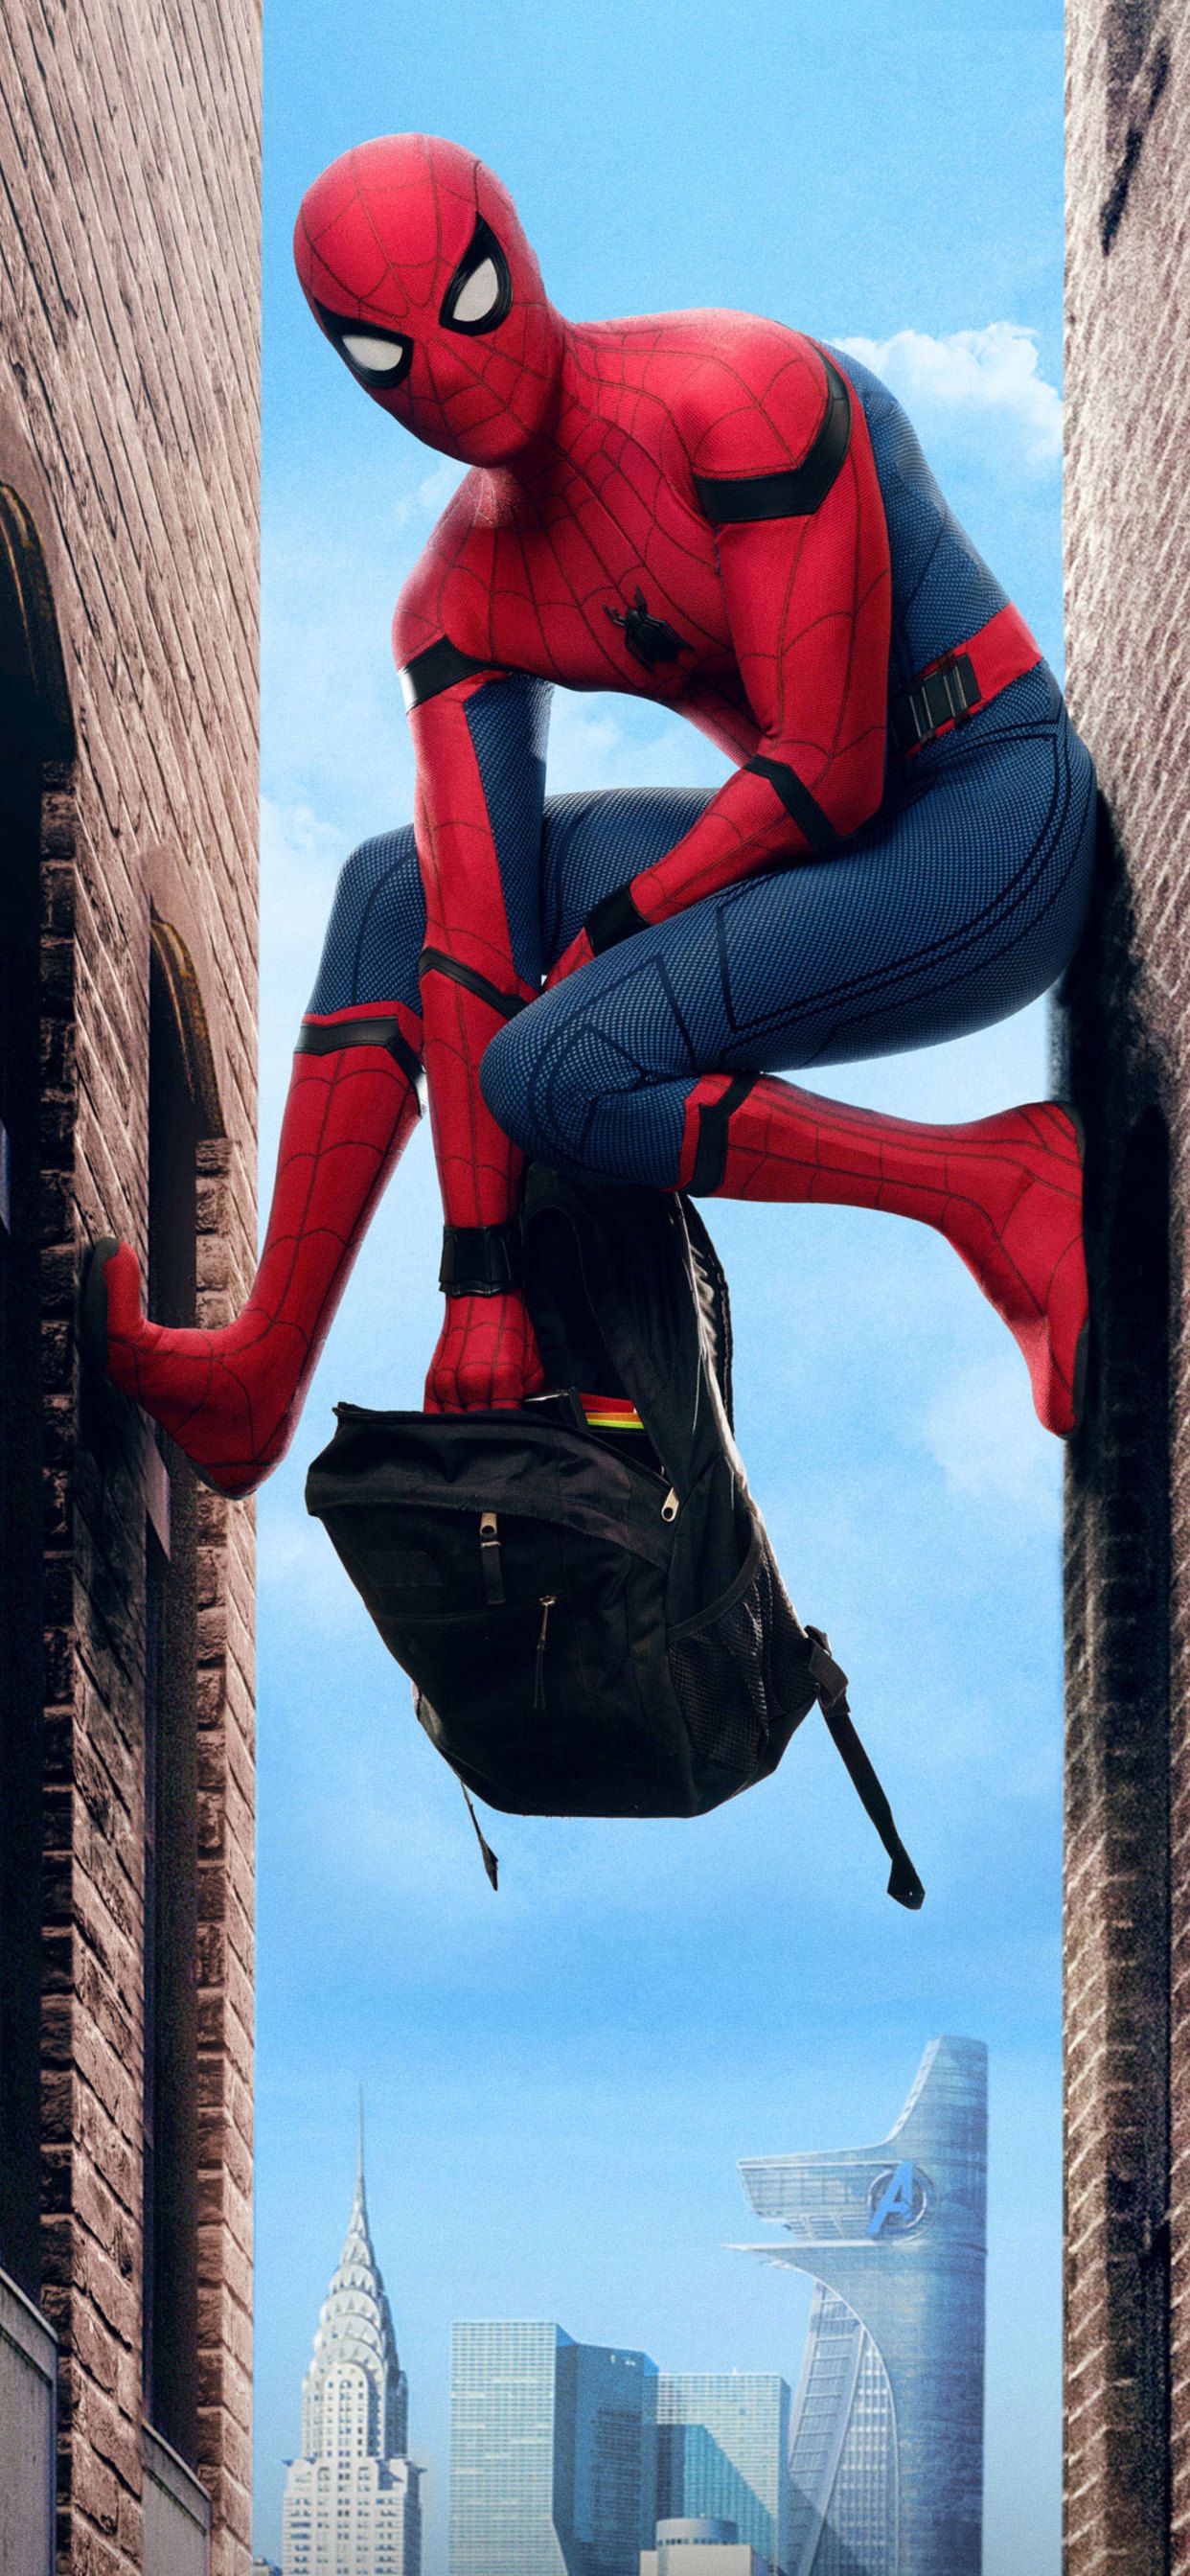 51+] Homecoming Civil War Spider-Man Wallpaper - WallpaperSafari